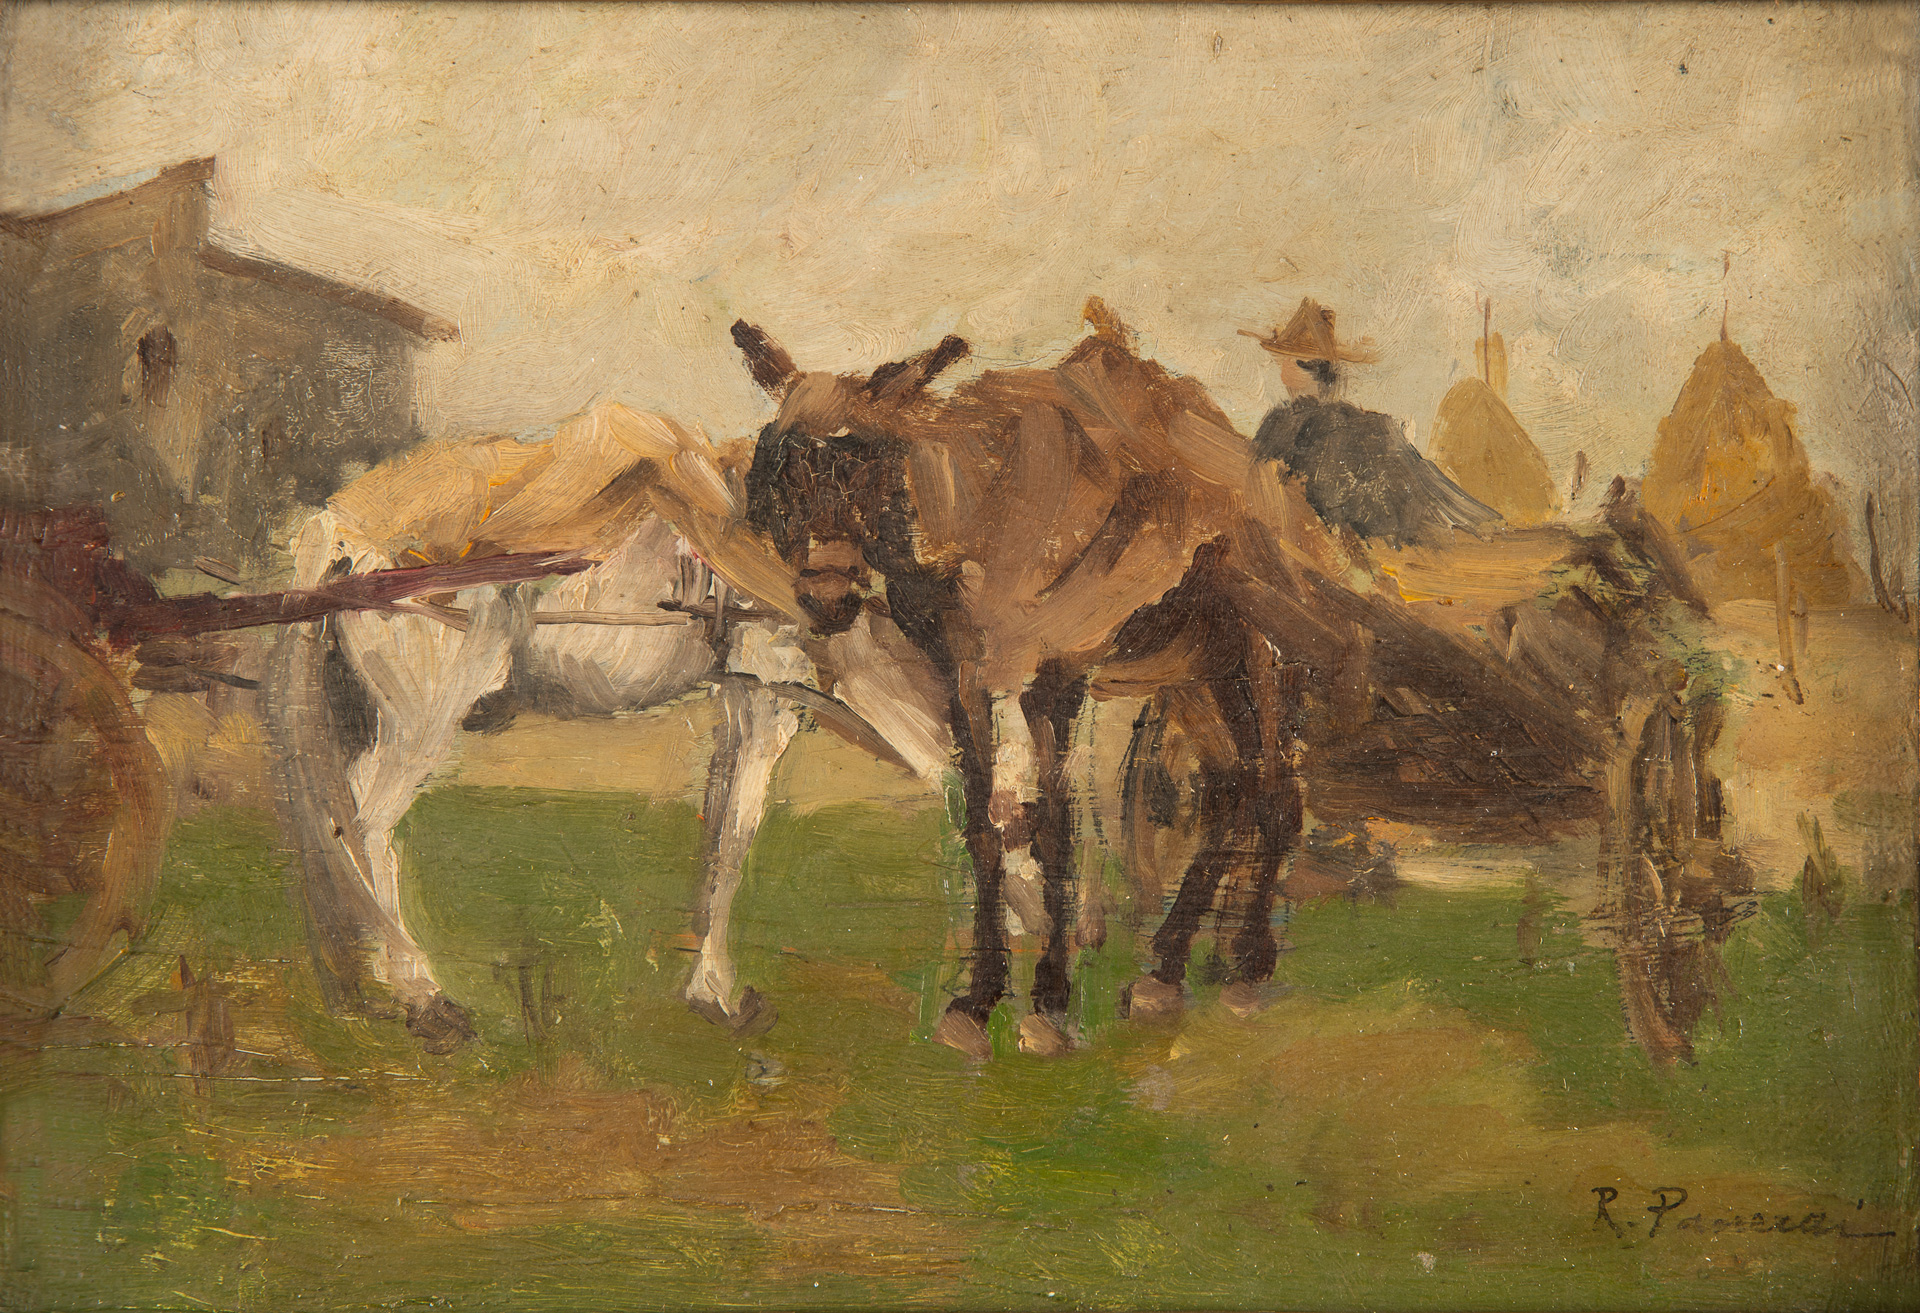 Ruggero Panerai (Firenze, 1862 - Parigi, 1923), Scena rurale